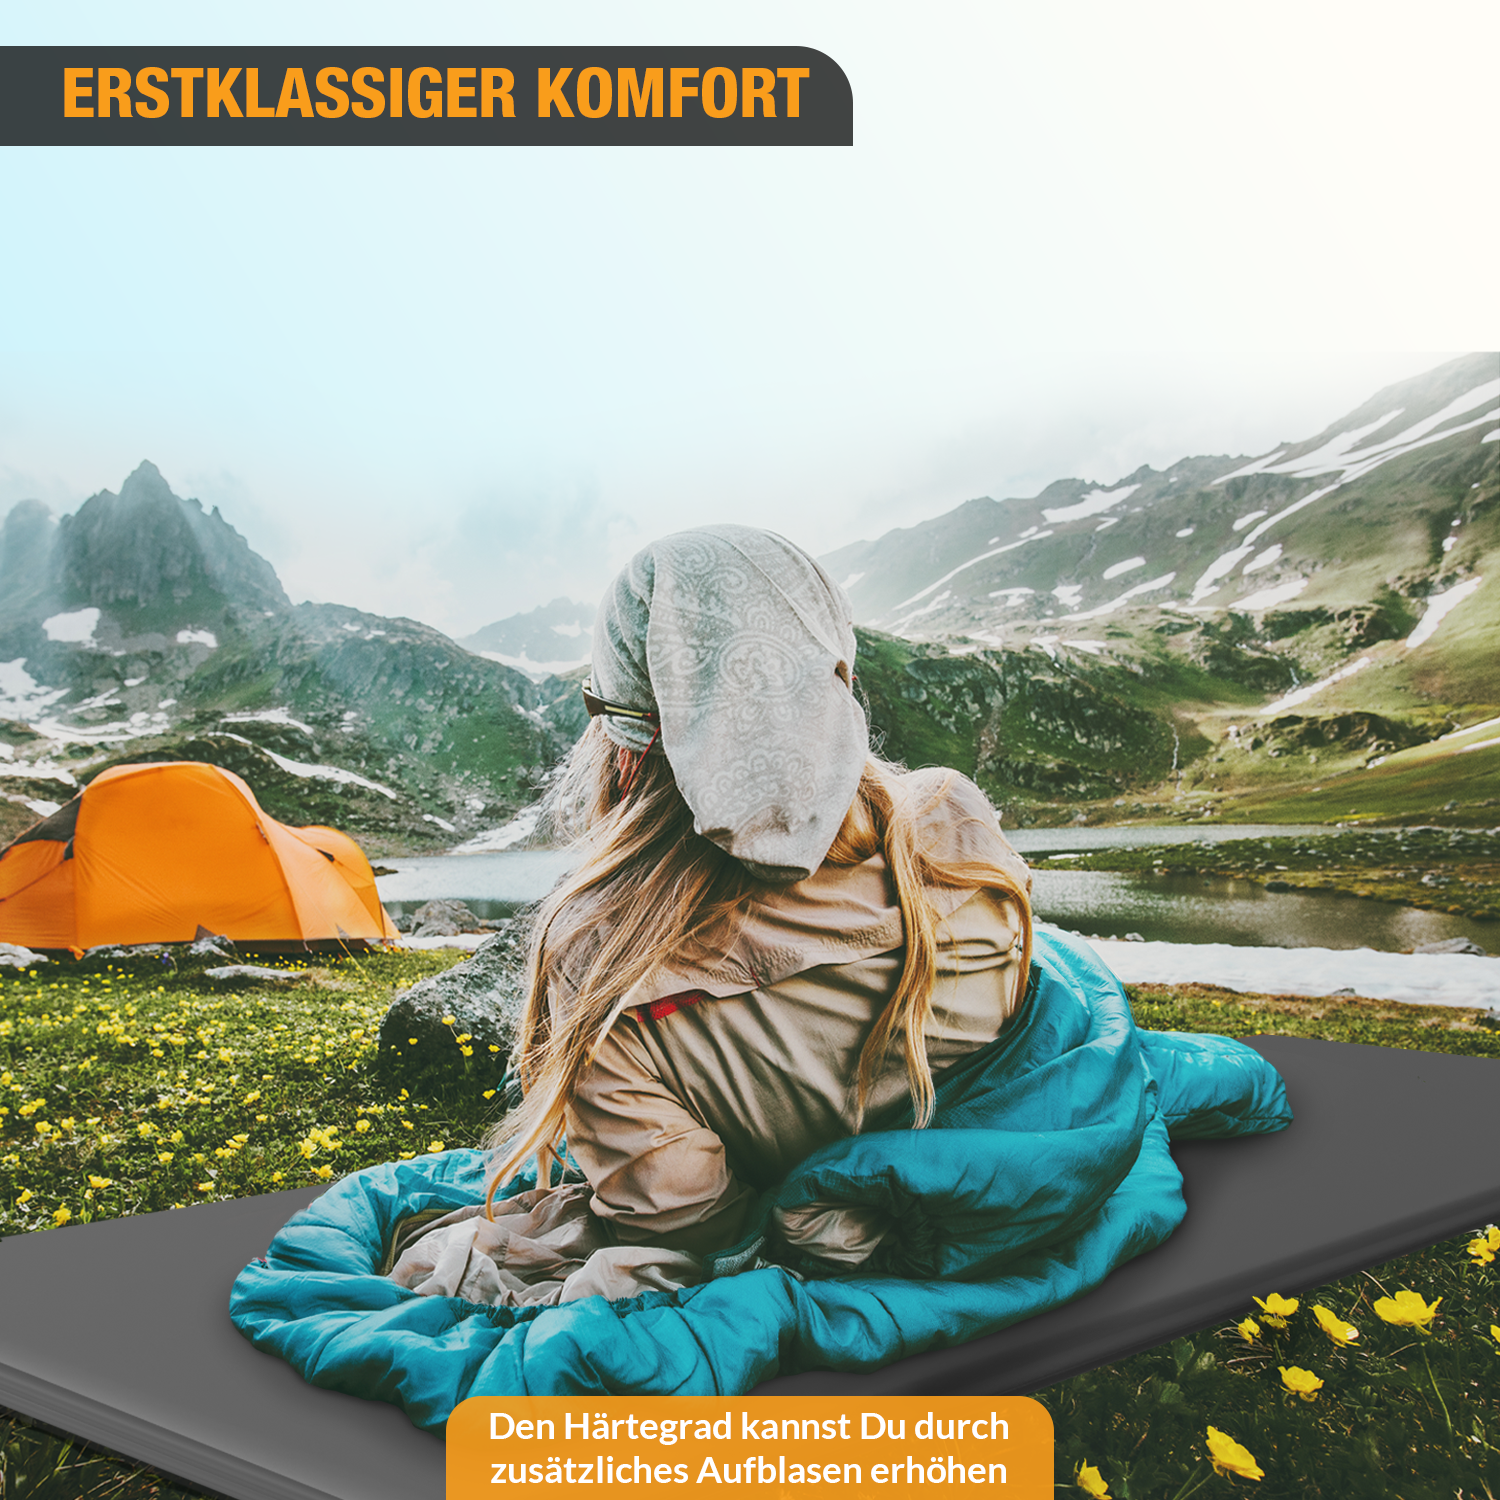 Luftmatratze: Isomatte, selbst aufblasend – Komfort beim Camping